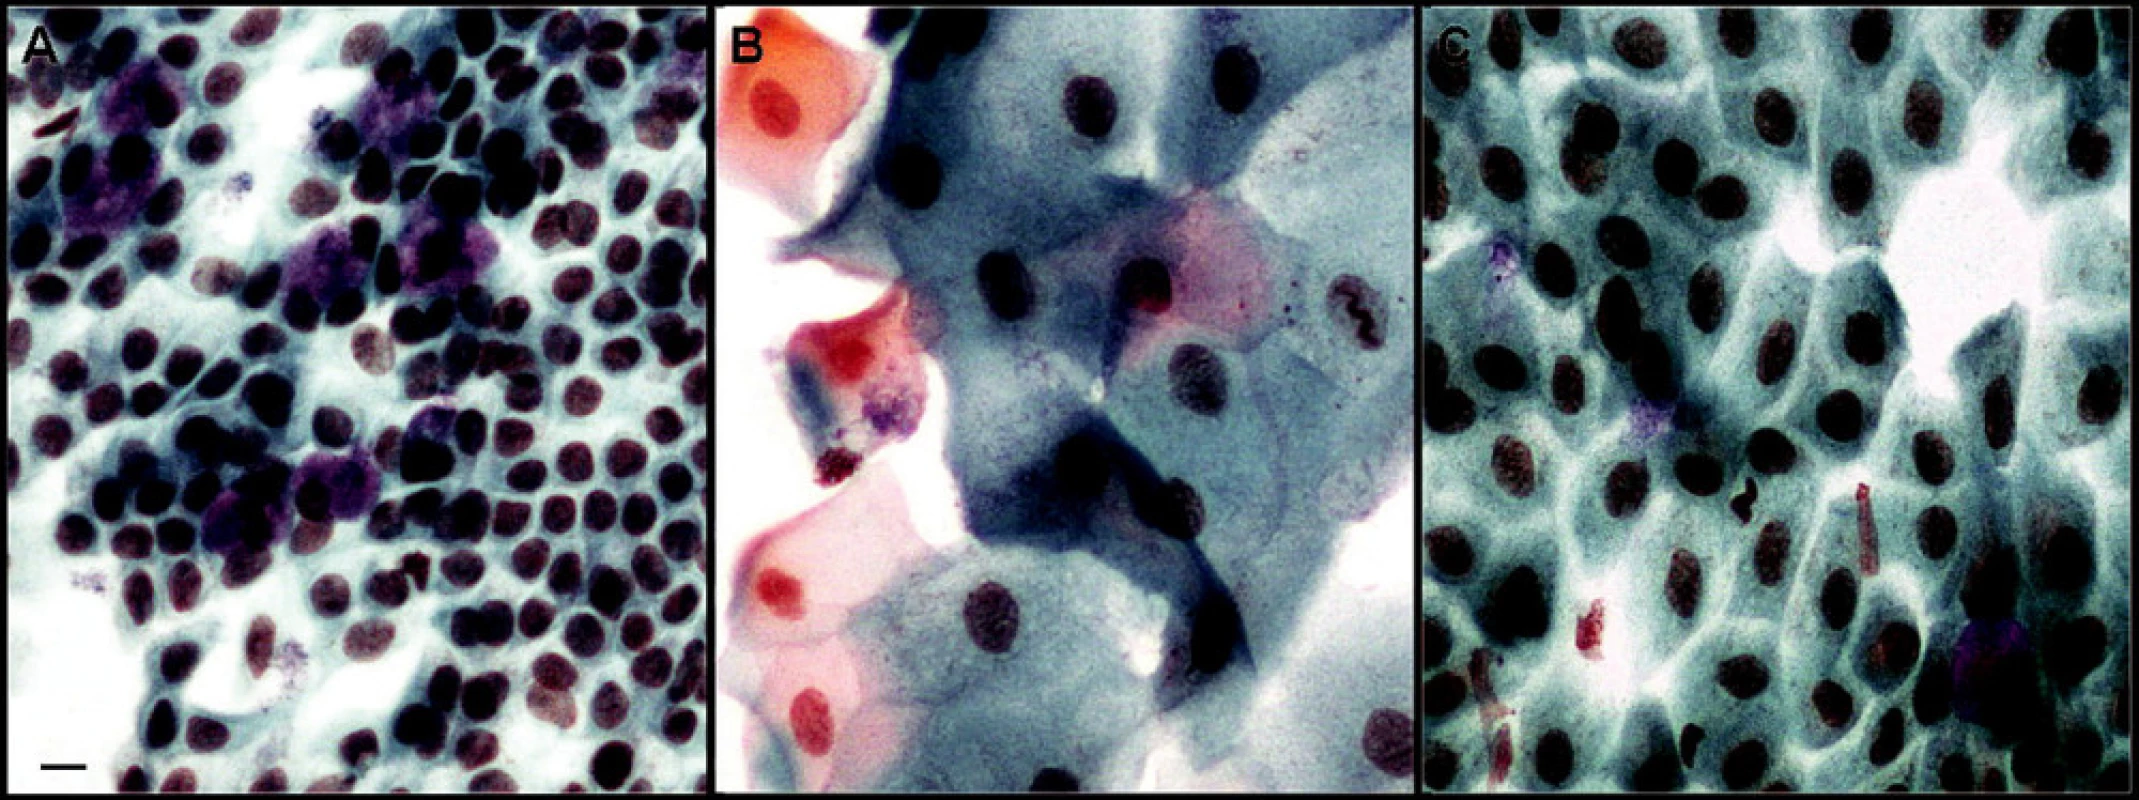 Otisková cytologie spojivky: vzorek zdravé spojivky – A, vzorek pacienta před – B, a vzorek pacienta po aplikaci AS – očních kapek – C